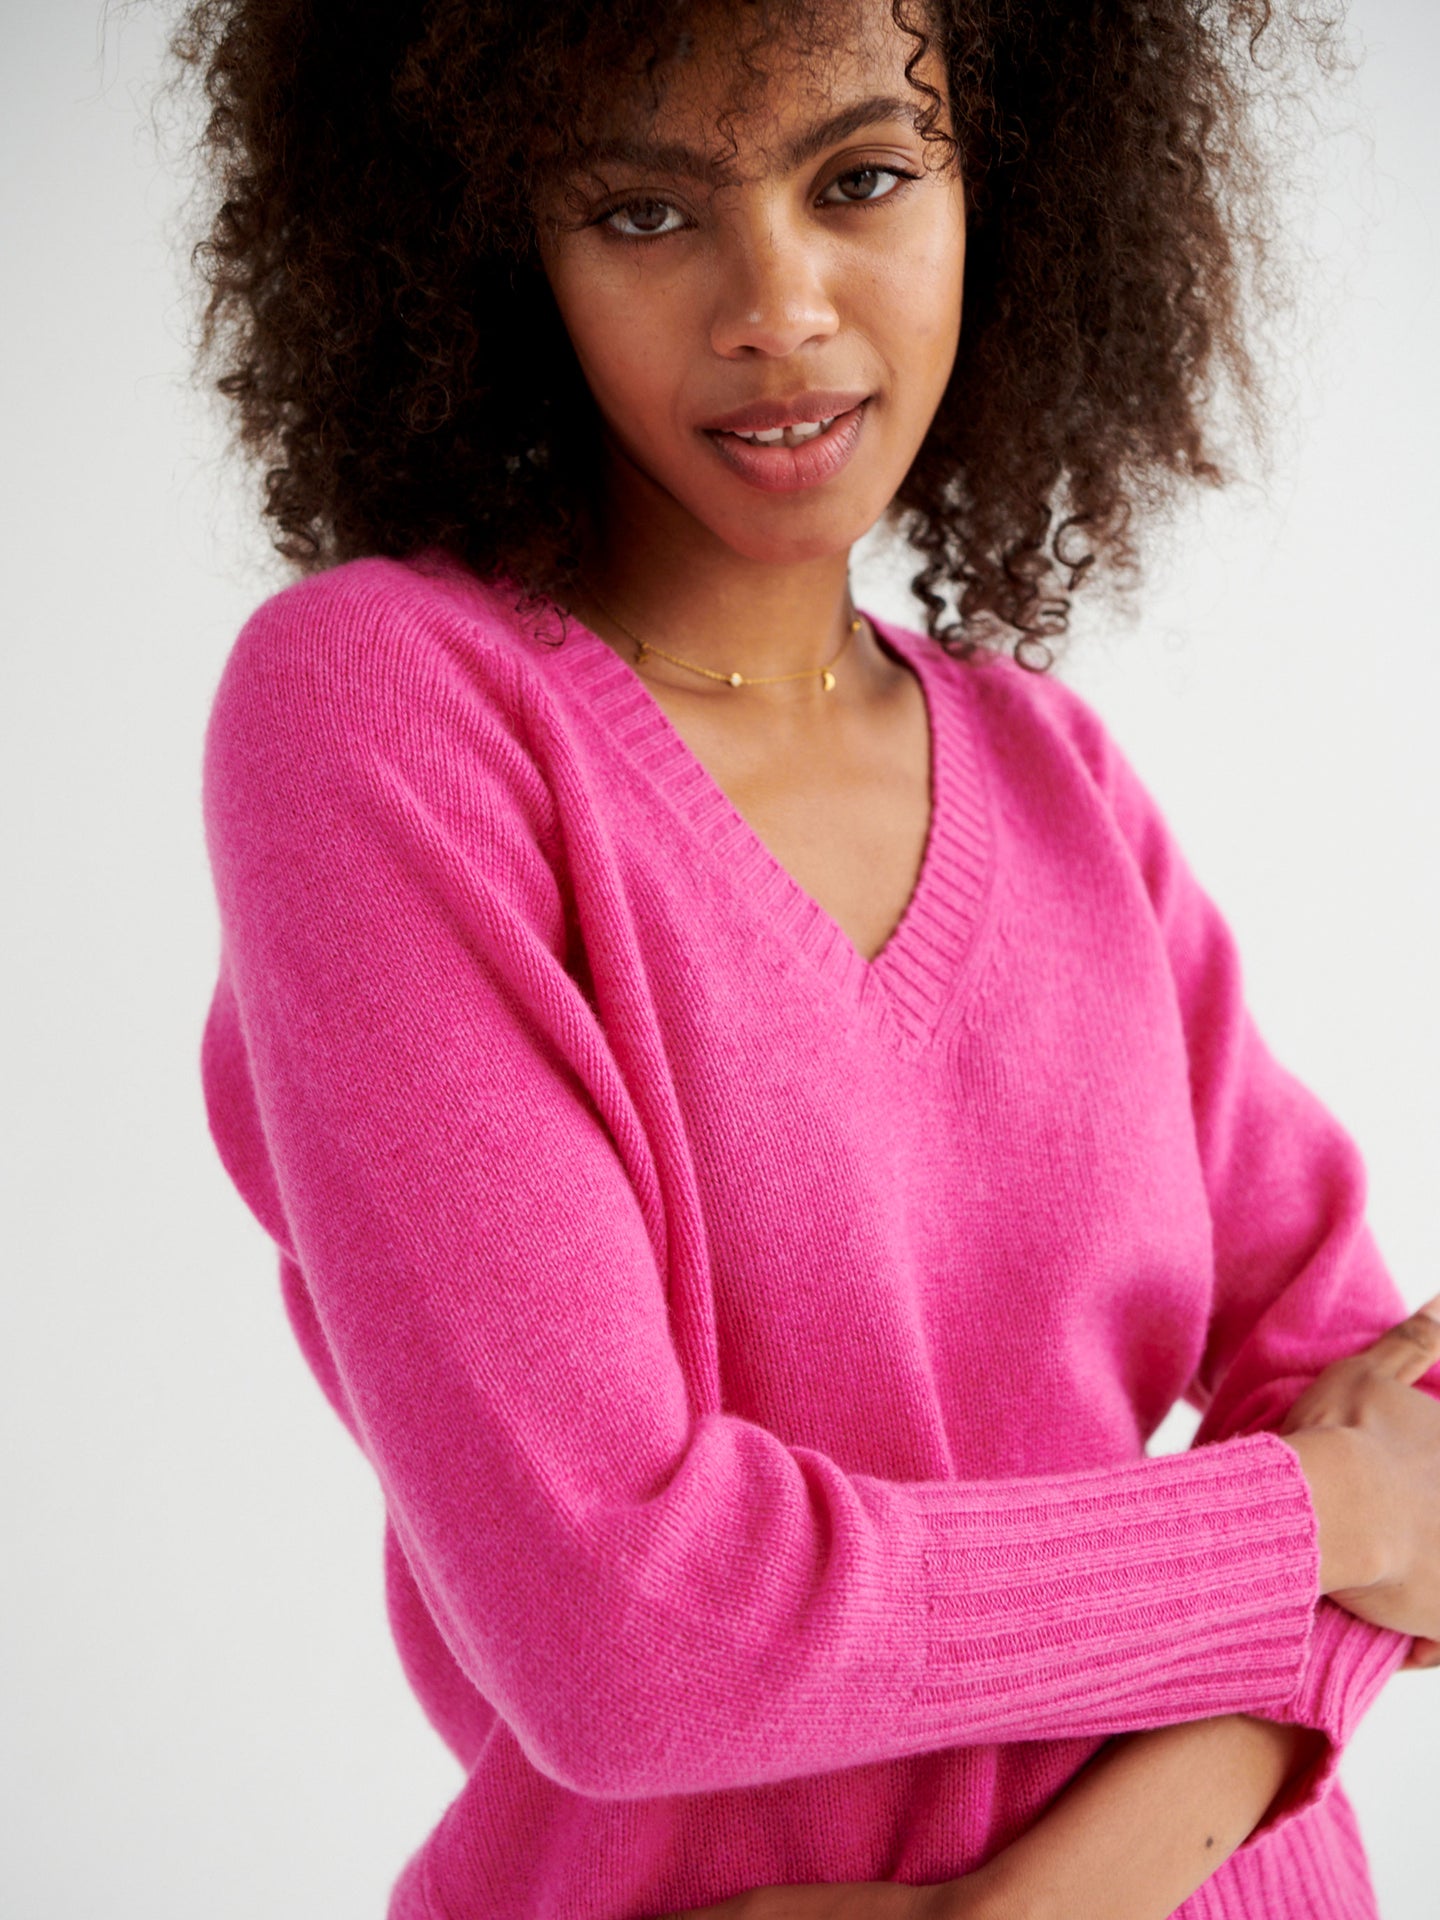 Mari perfect cashmere sweater - Heathered Cherry